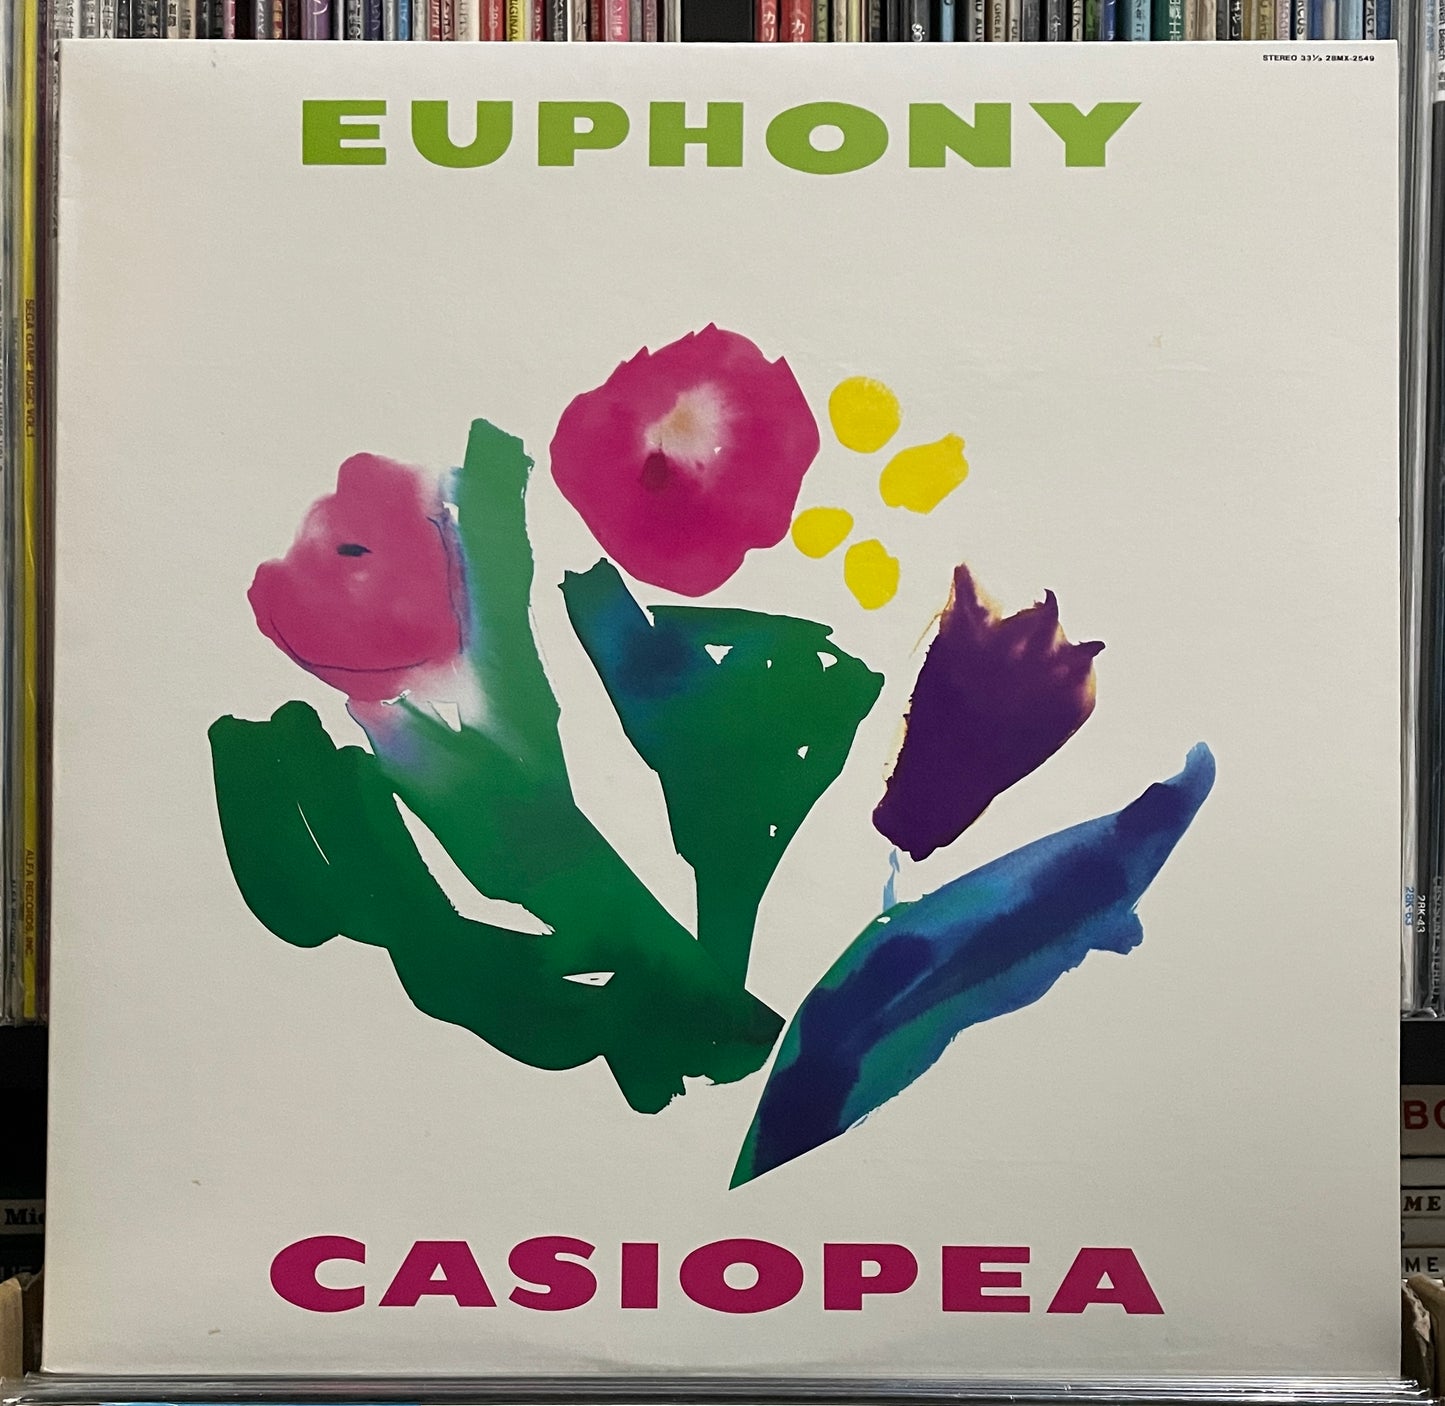 Casiopea “Euphony” (1988)